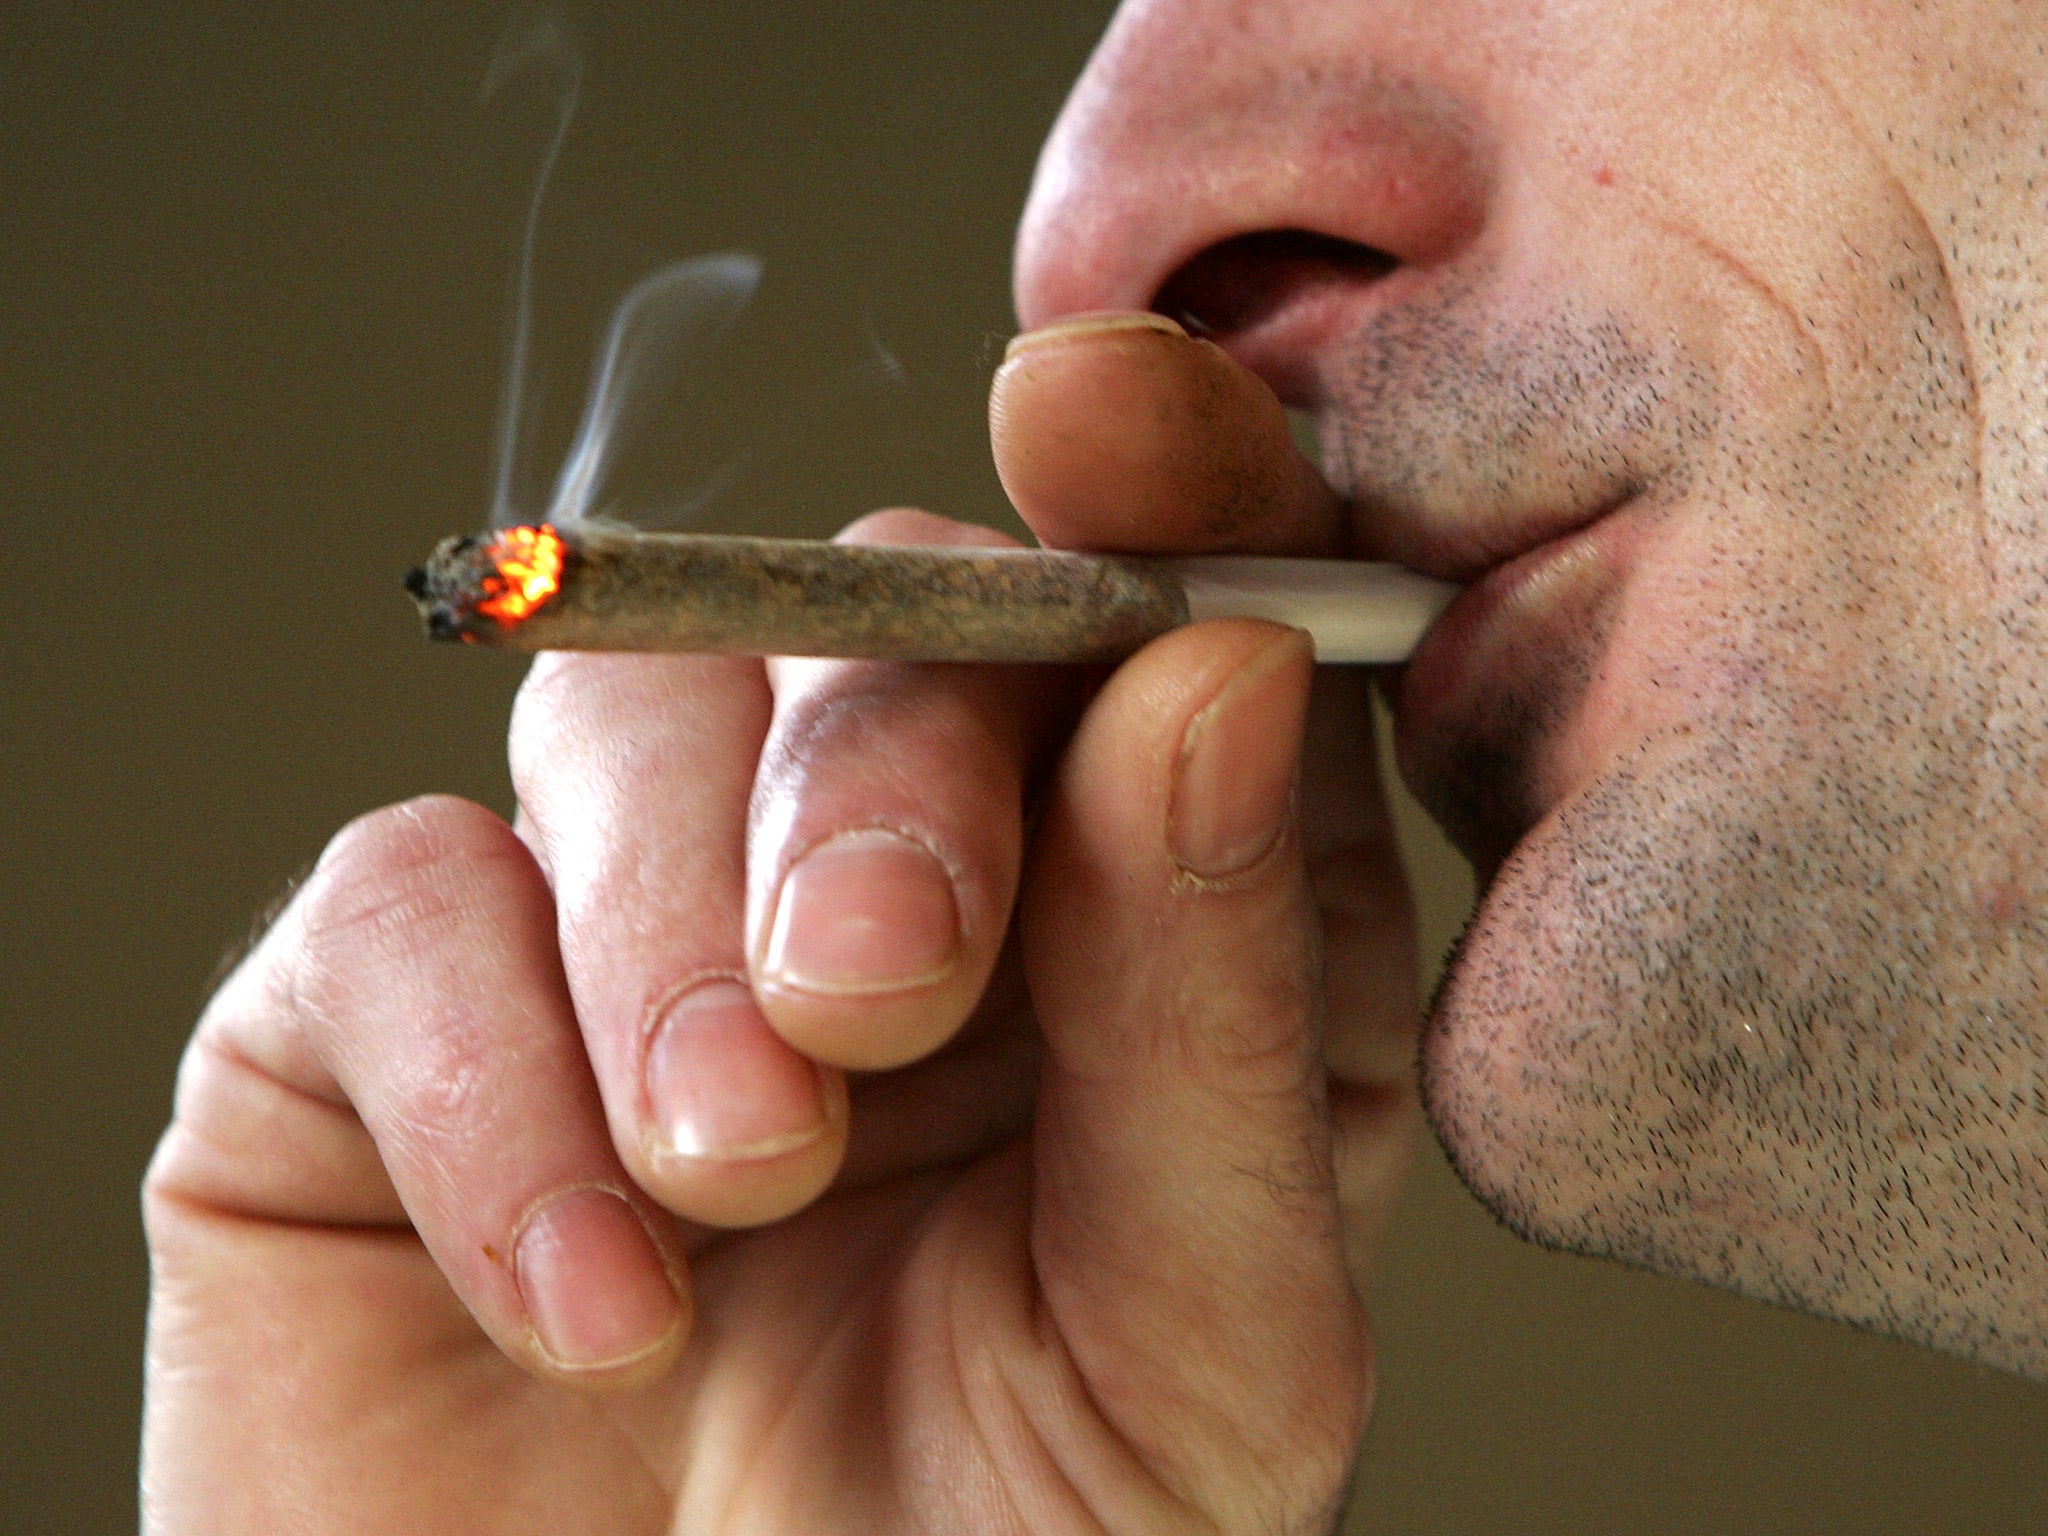 Colorado and Washington states have both legalised marijuana for recreational use